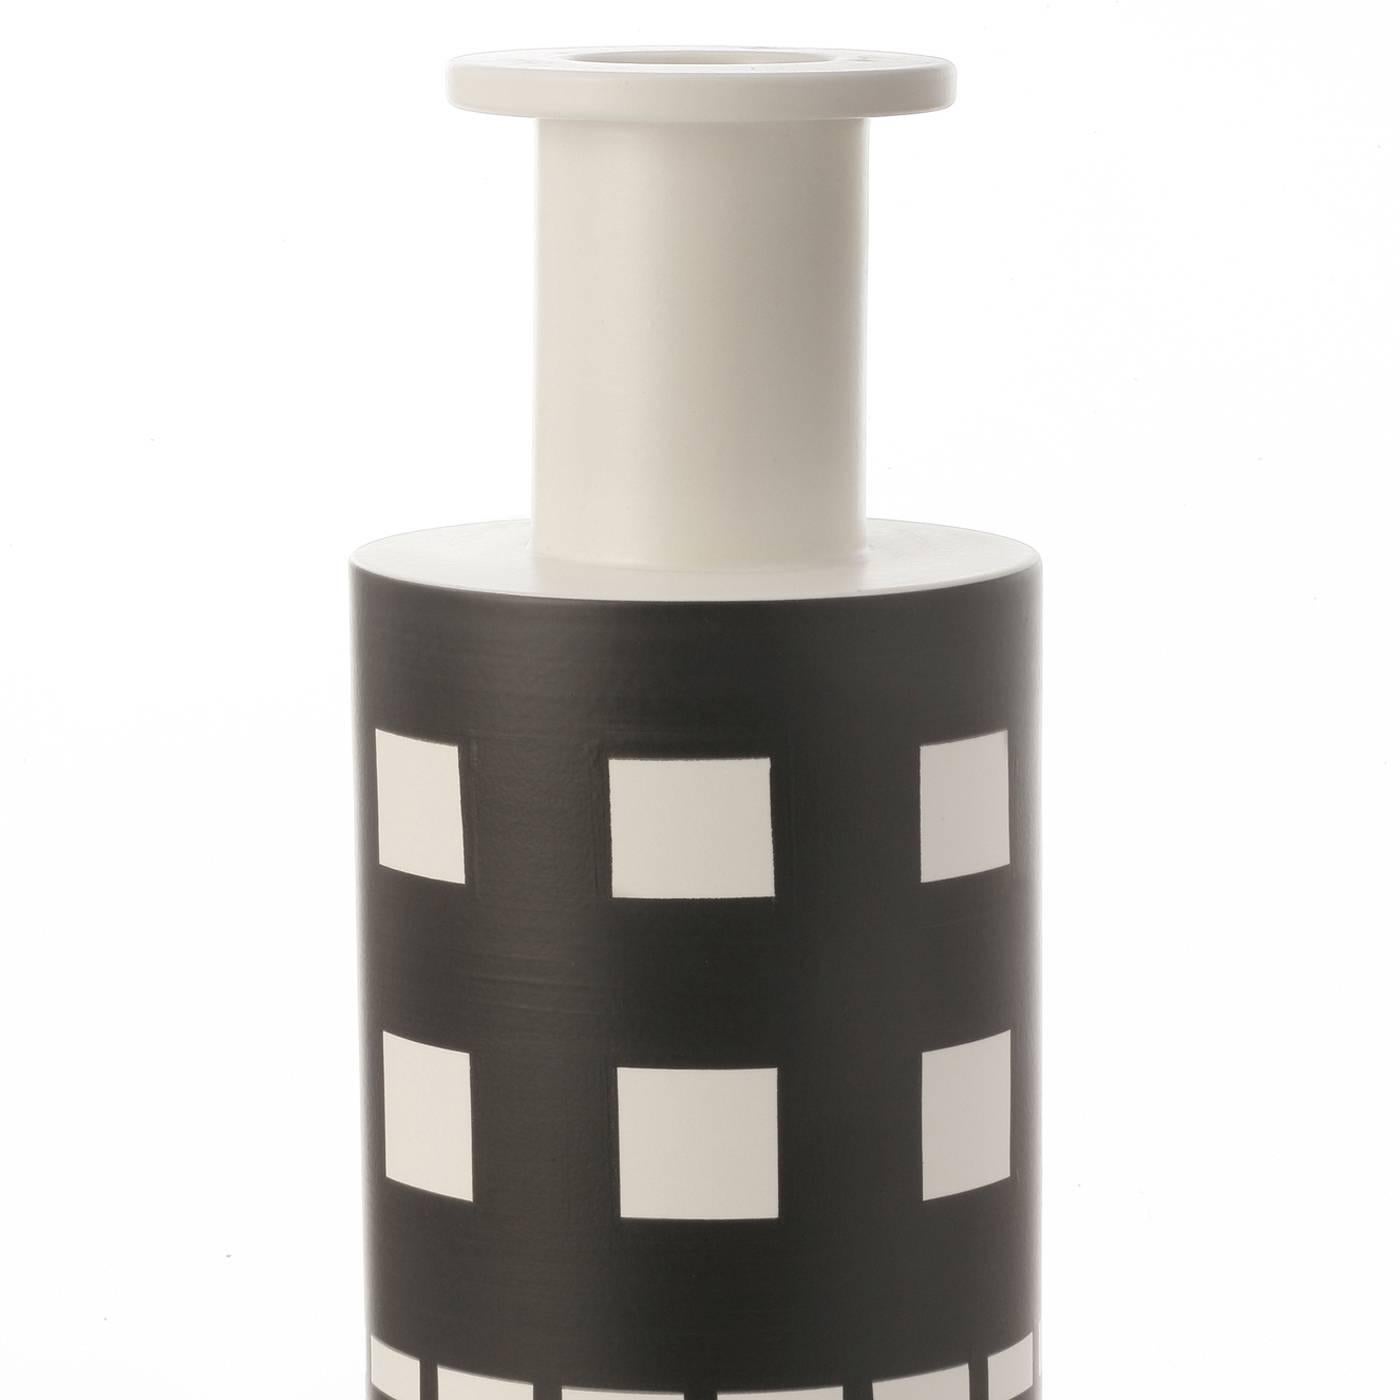 La forme simple de ce vase est complétée par son décor géométrique qui présente des motifs frappants en noir sur le fond blanc de la forme cylindrique. Cette pièce a été conçue par le célèbre architecte Ettore Sottsass en 1962.